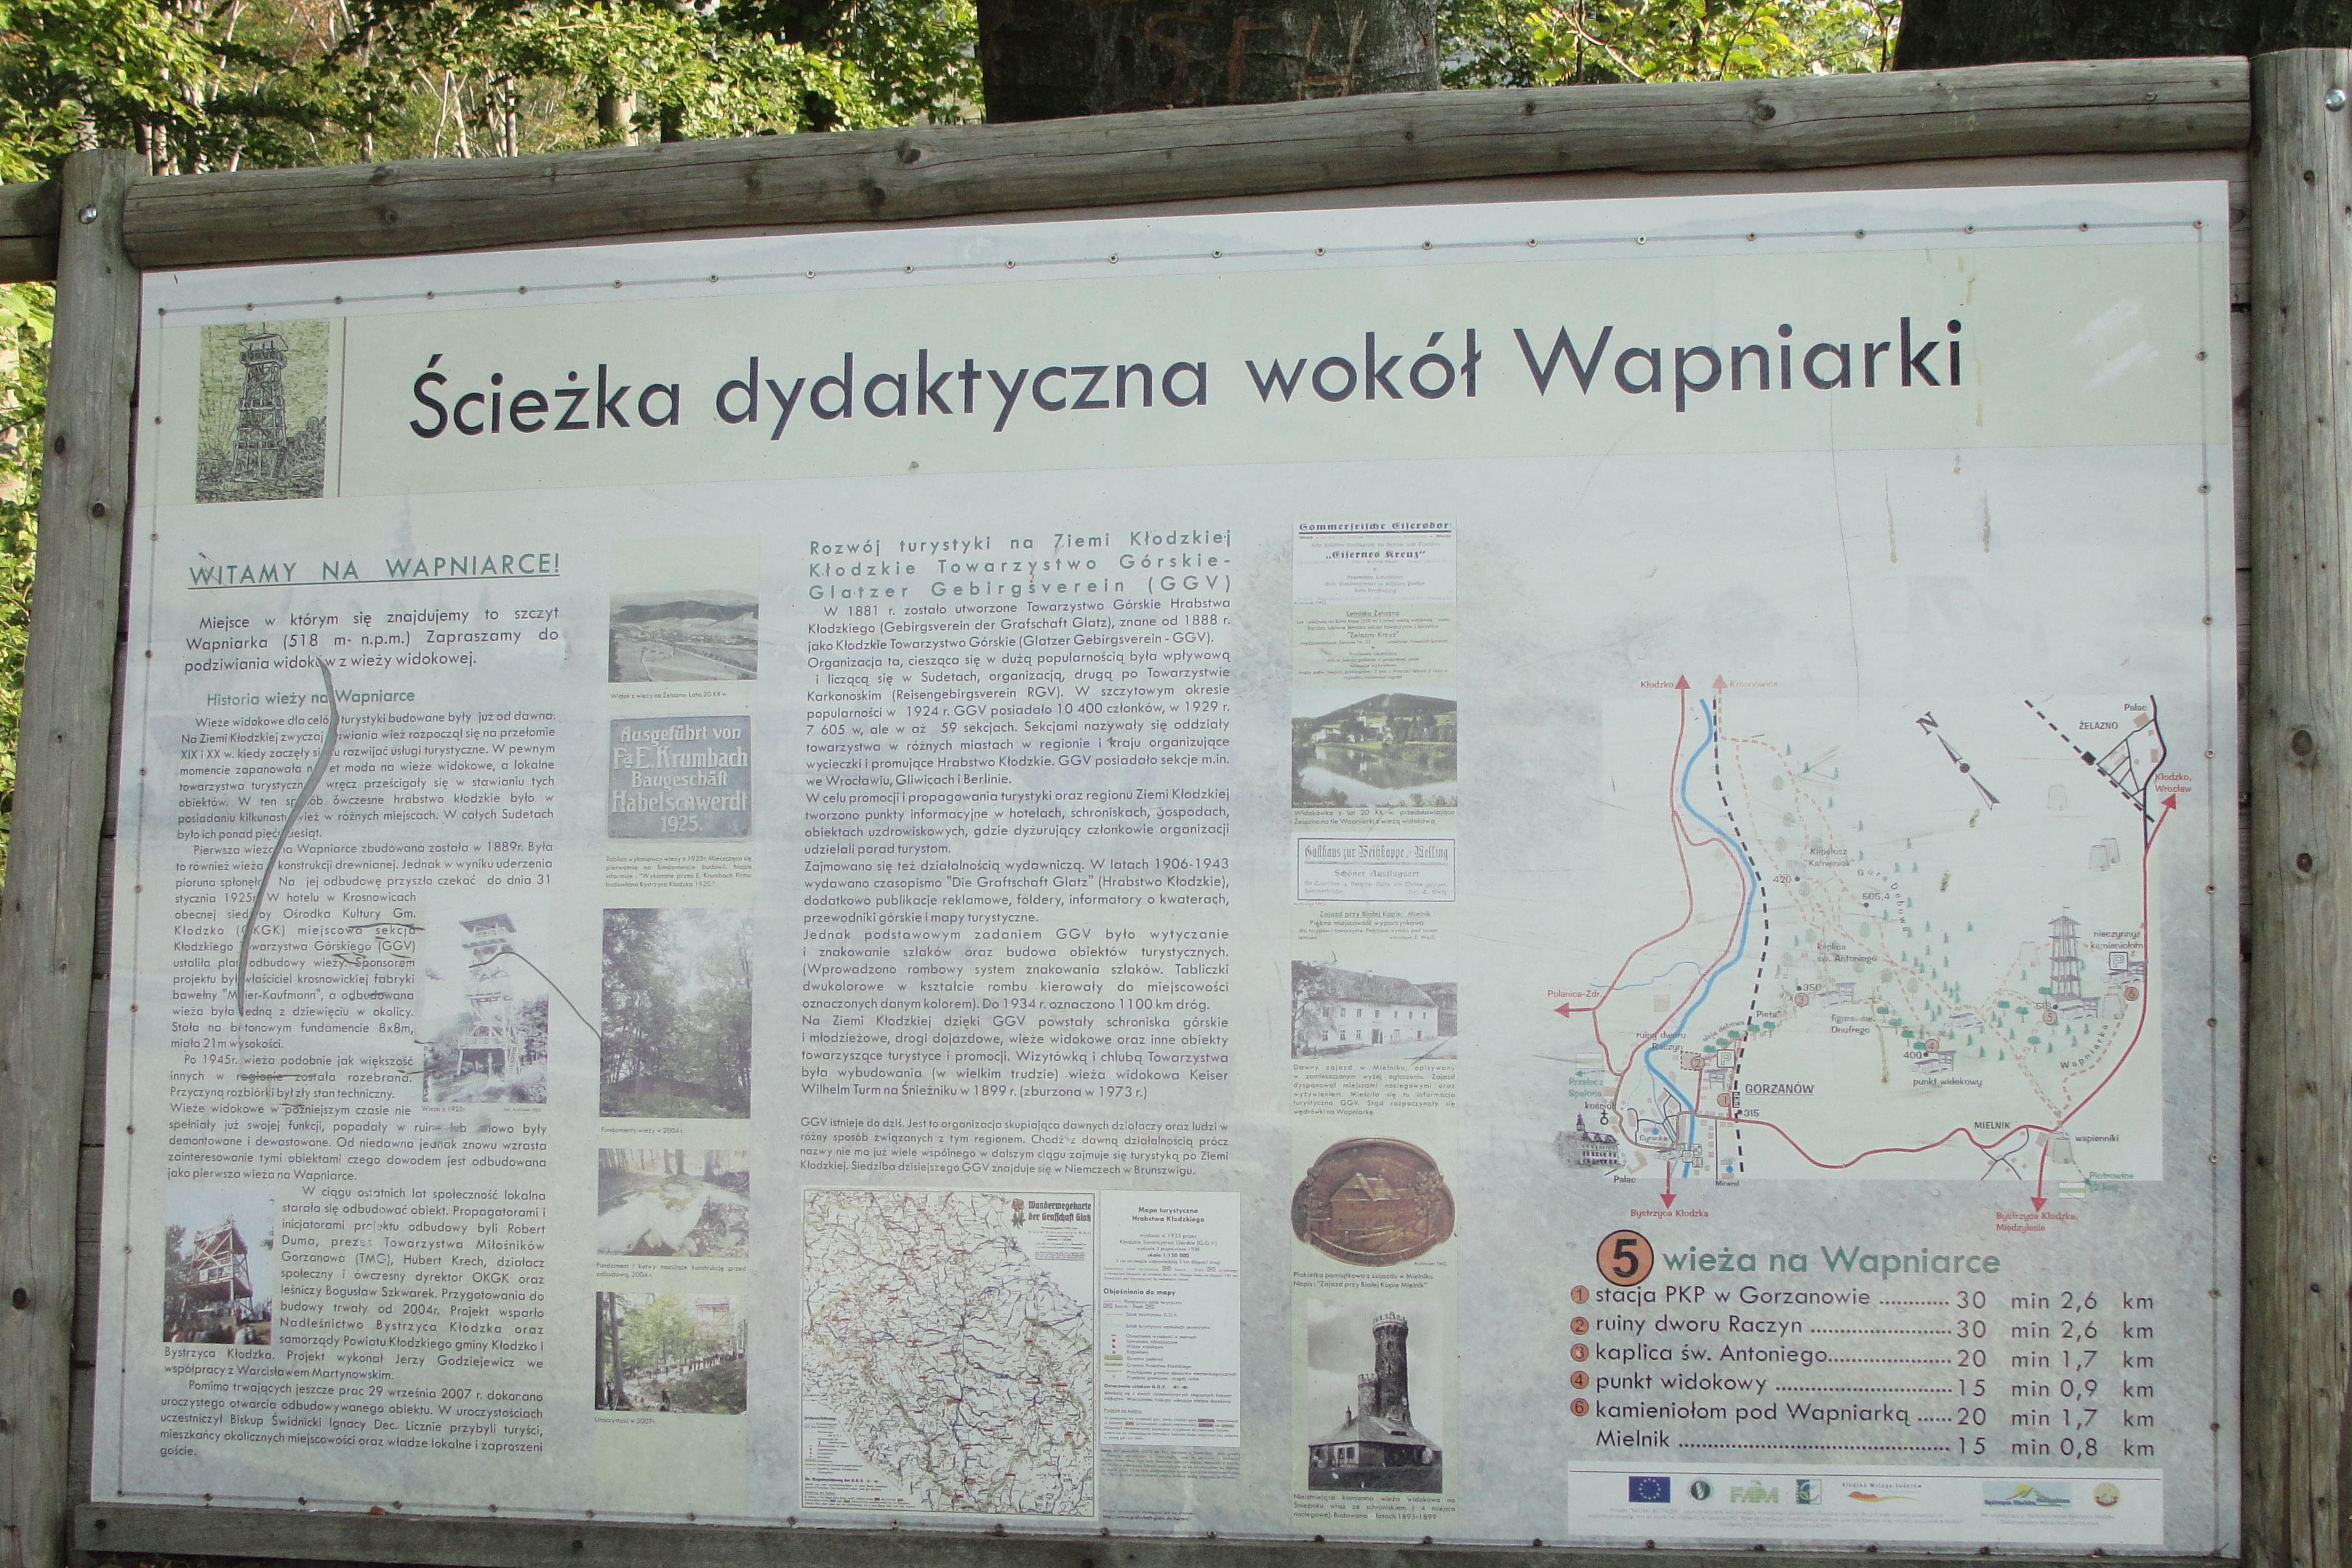 Ścieżka Dydaktyczna wokół Wapniarki, Przystanek 5, Autor: M. Biernat, 27.09.2011r.